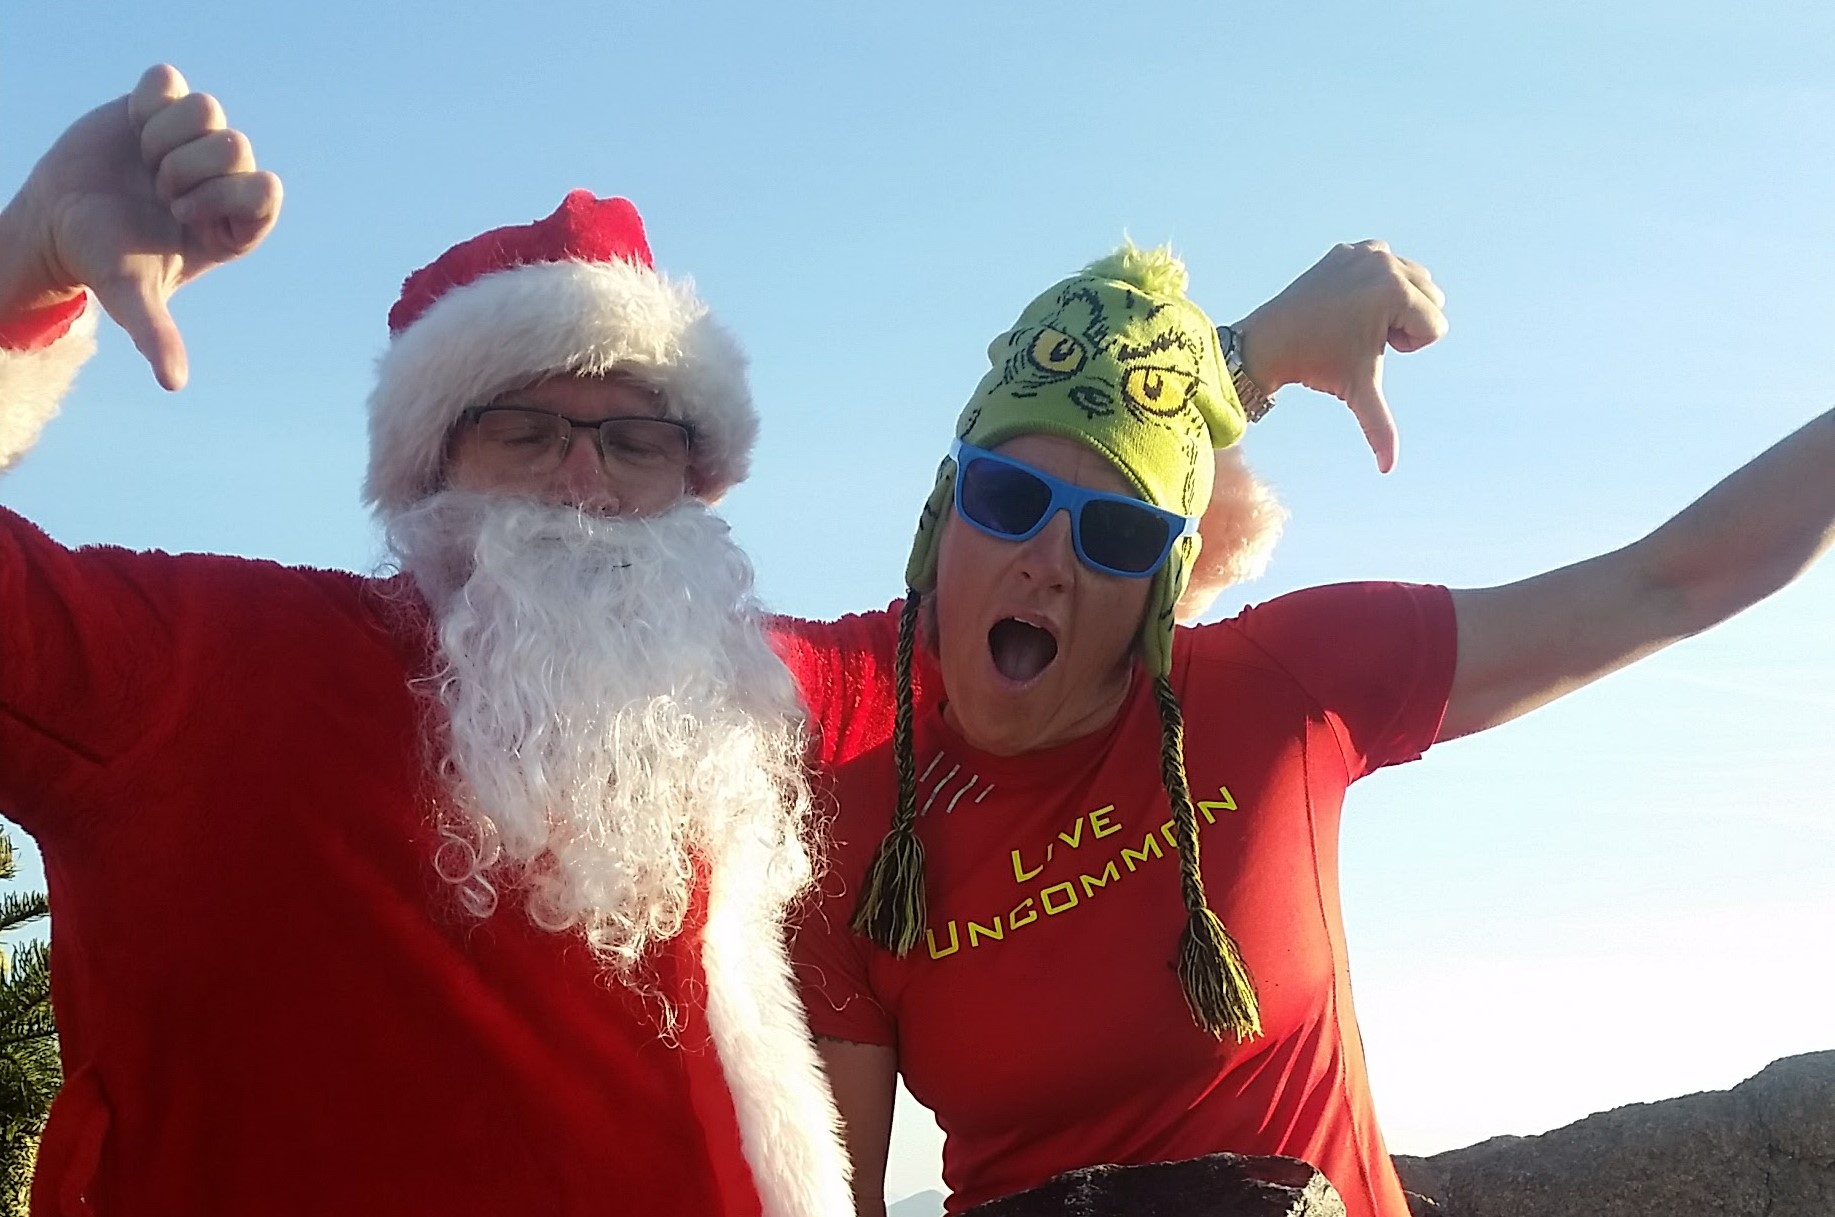 Phoenix hiking tours on Santa's 'Nice List